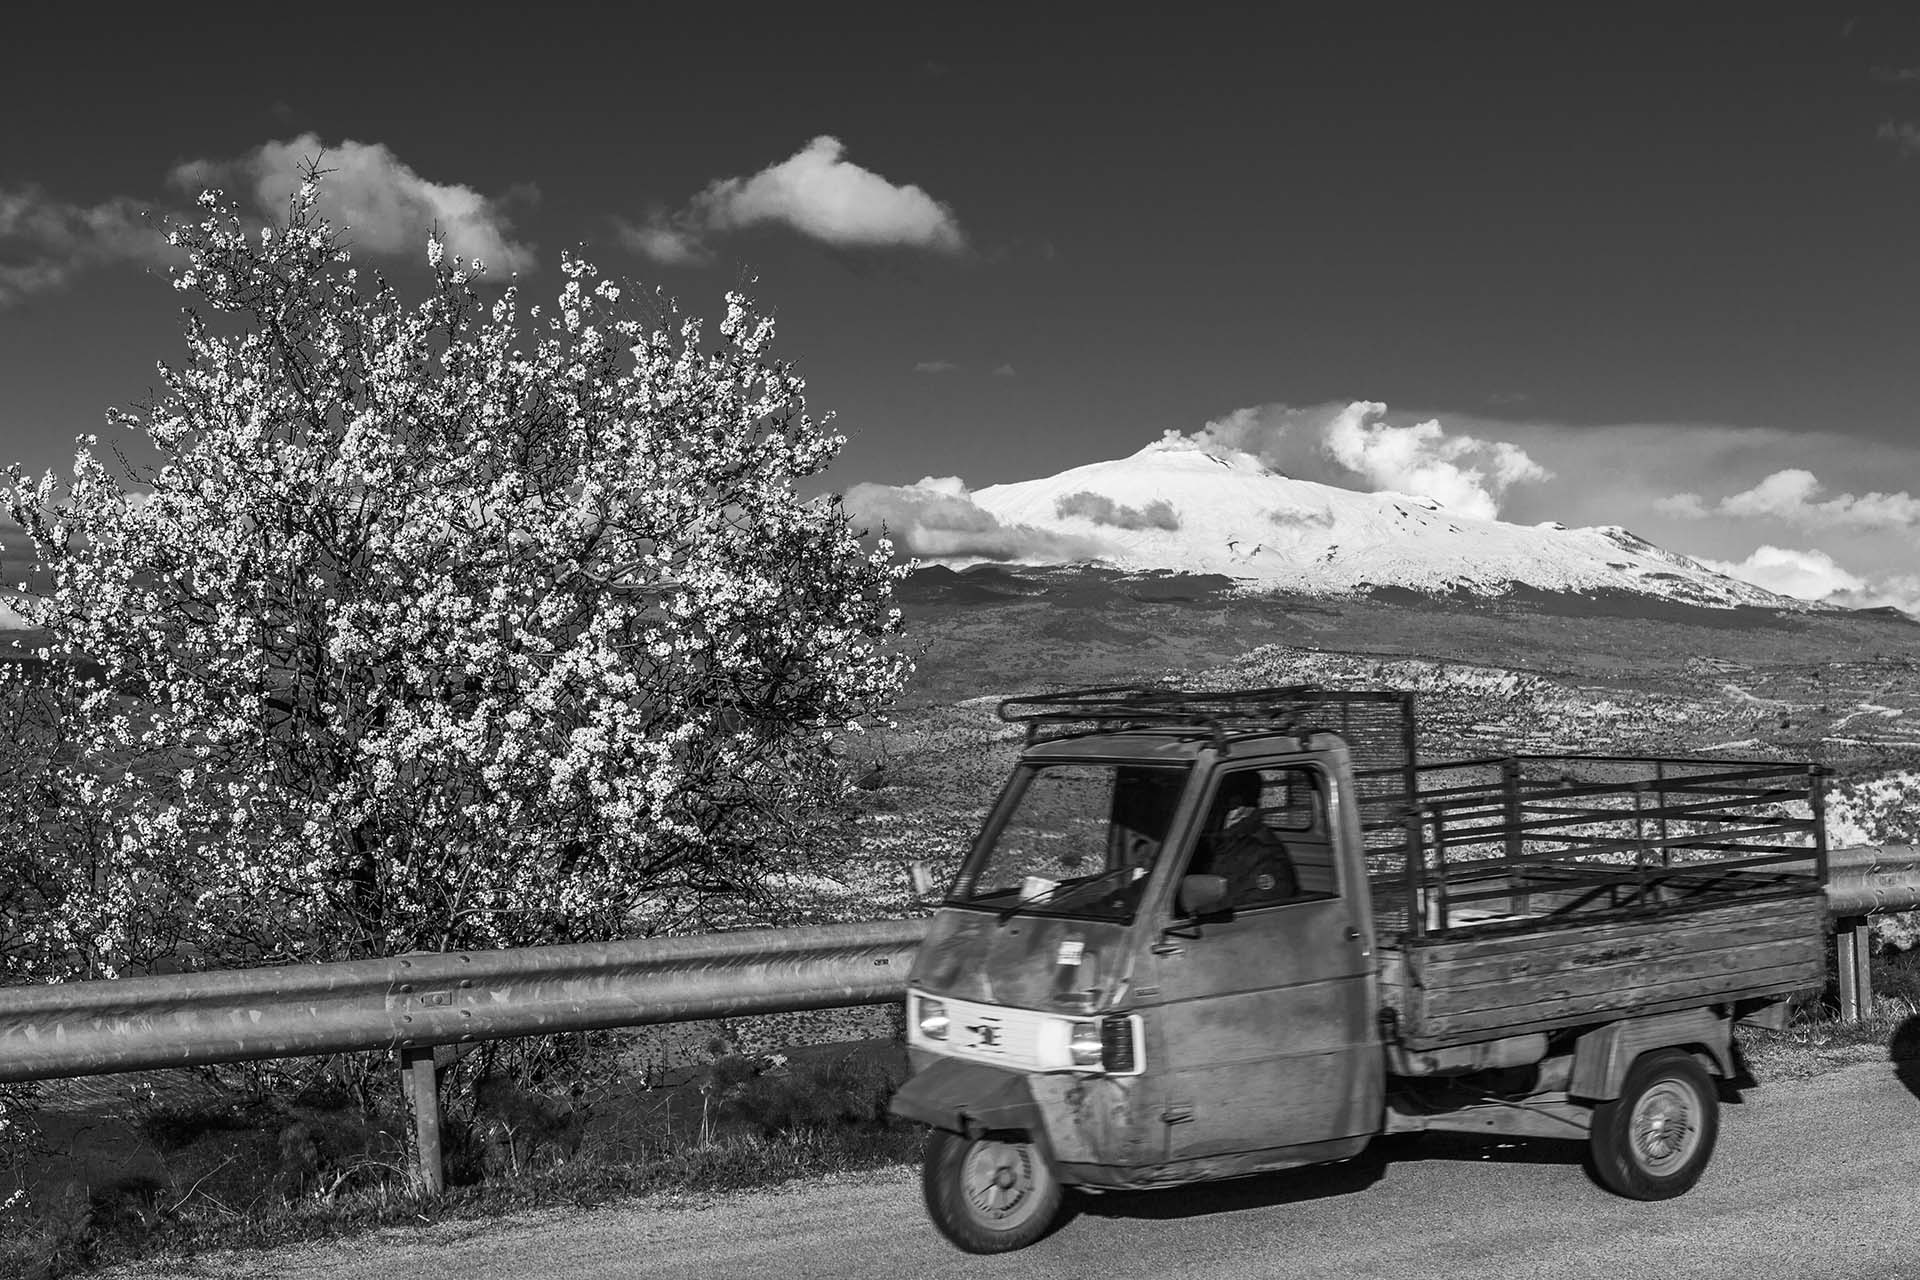 Centuripe, l'Ape Piaggio in giro per le campagne dell'Ennese con vista Etna